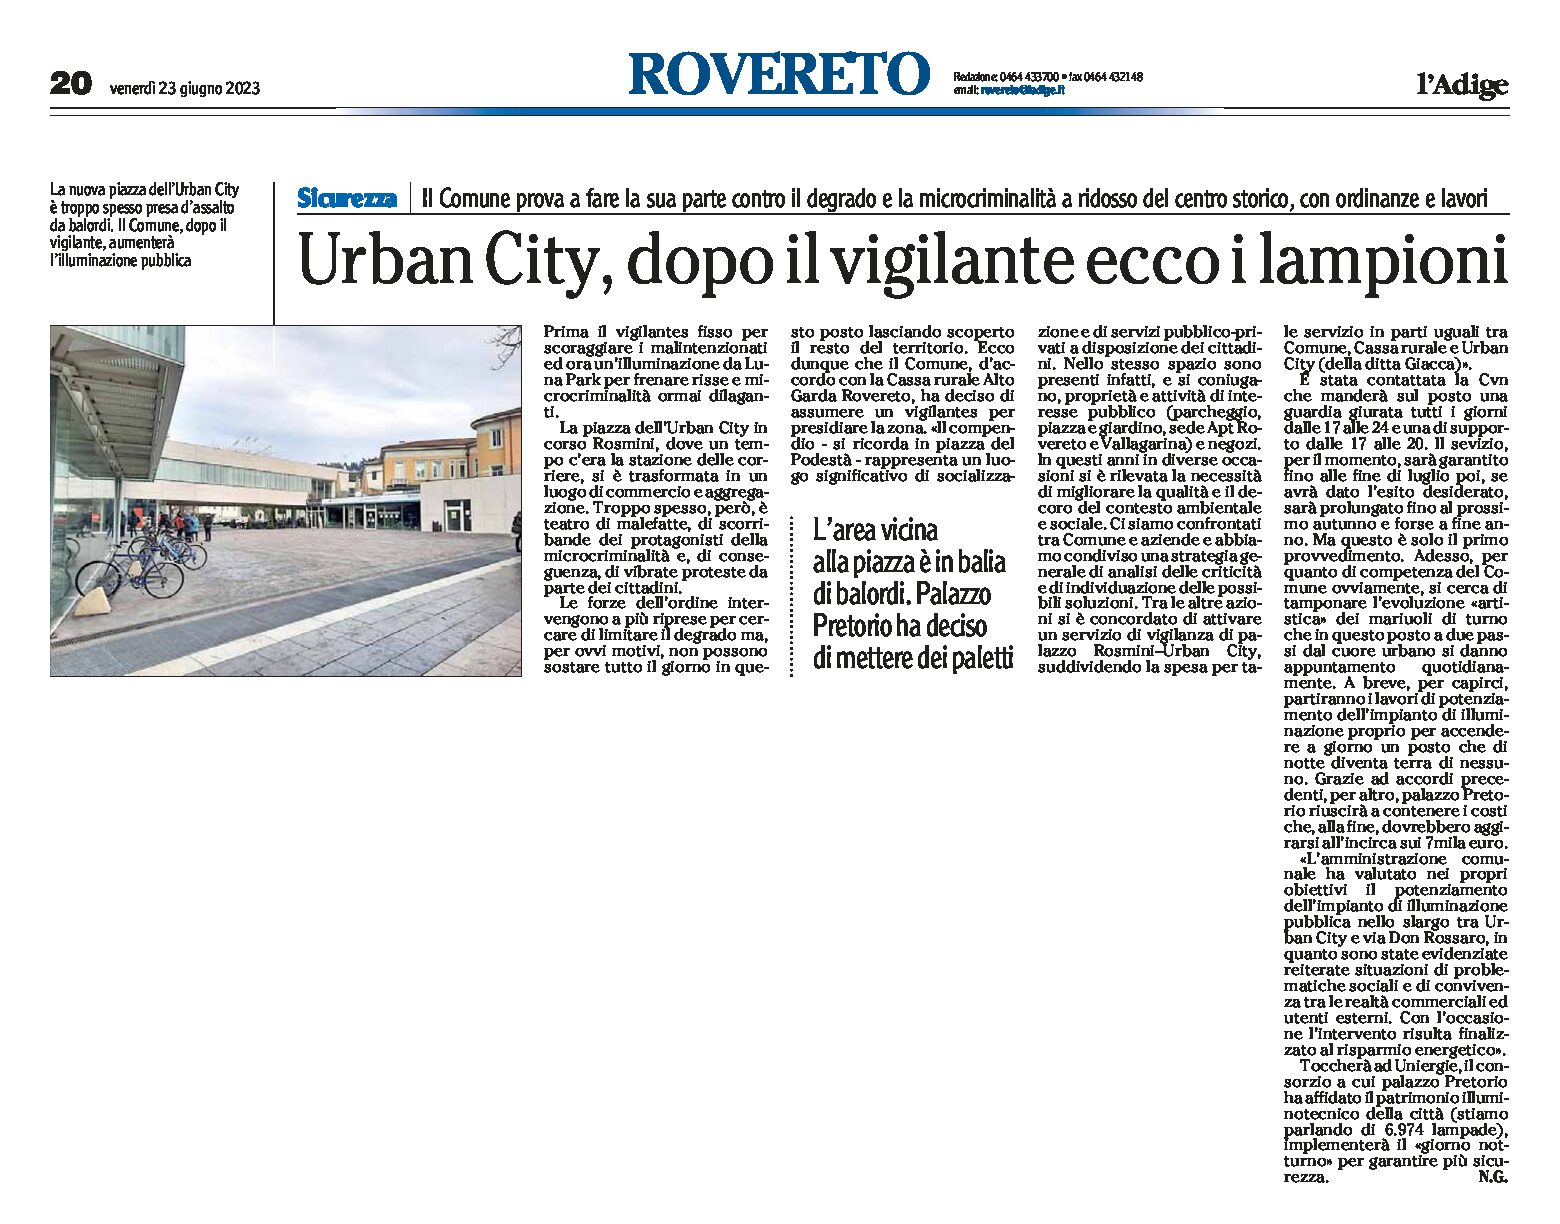 Rovereto, Urban City: dopo il vigilante ecco i lampioni